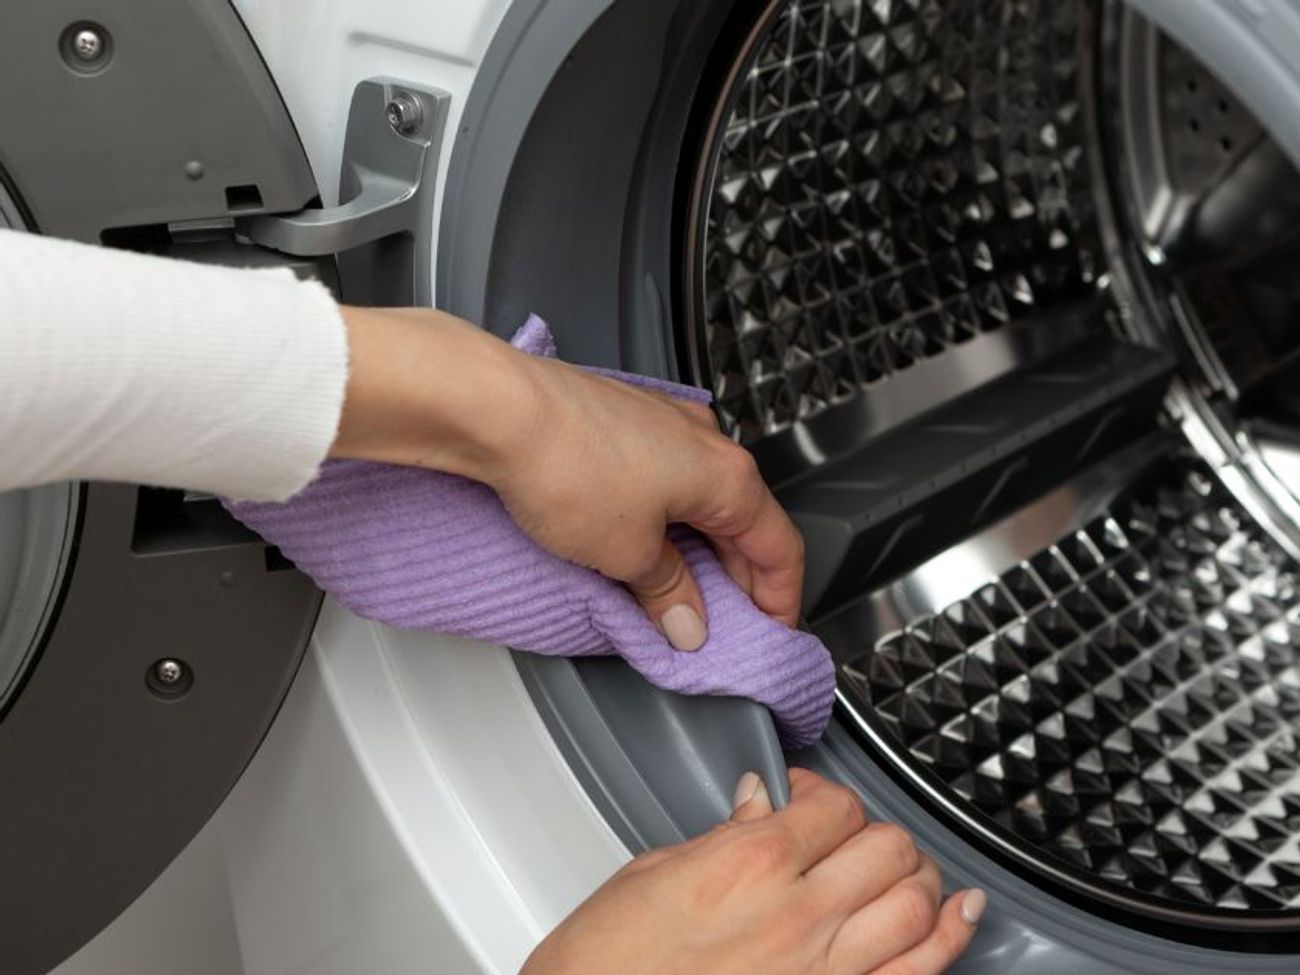 Pour quel type de machine à laver êtes-vous ? - Le blog de Domomat -  conseils et astuces pour bricoler